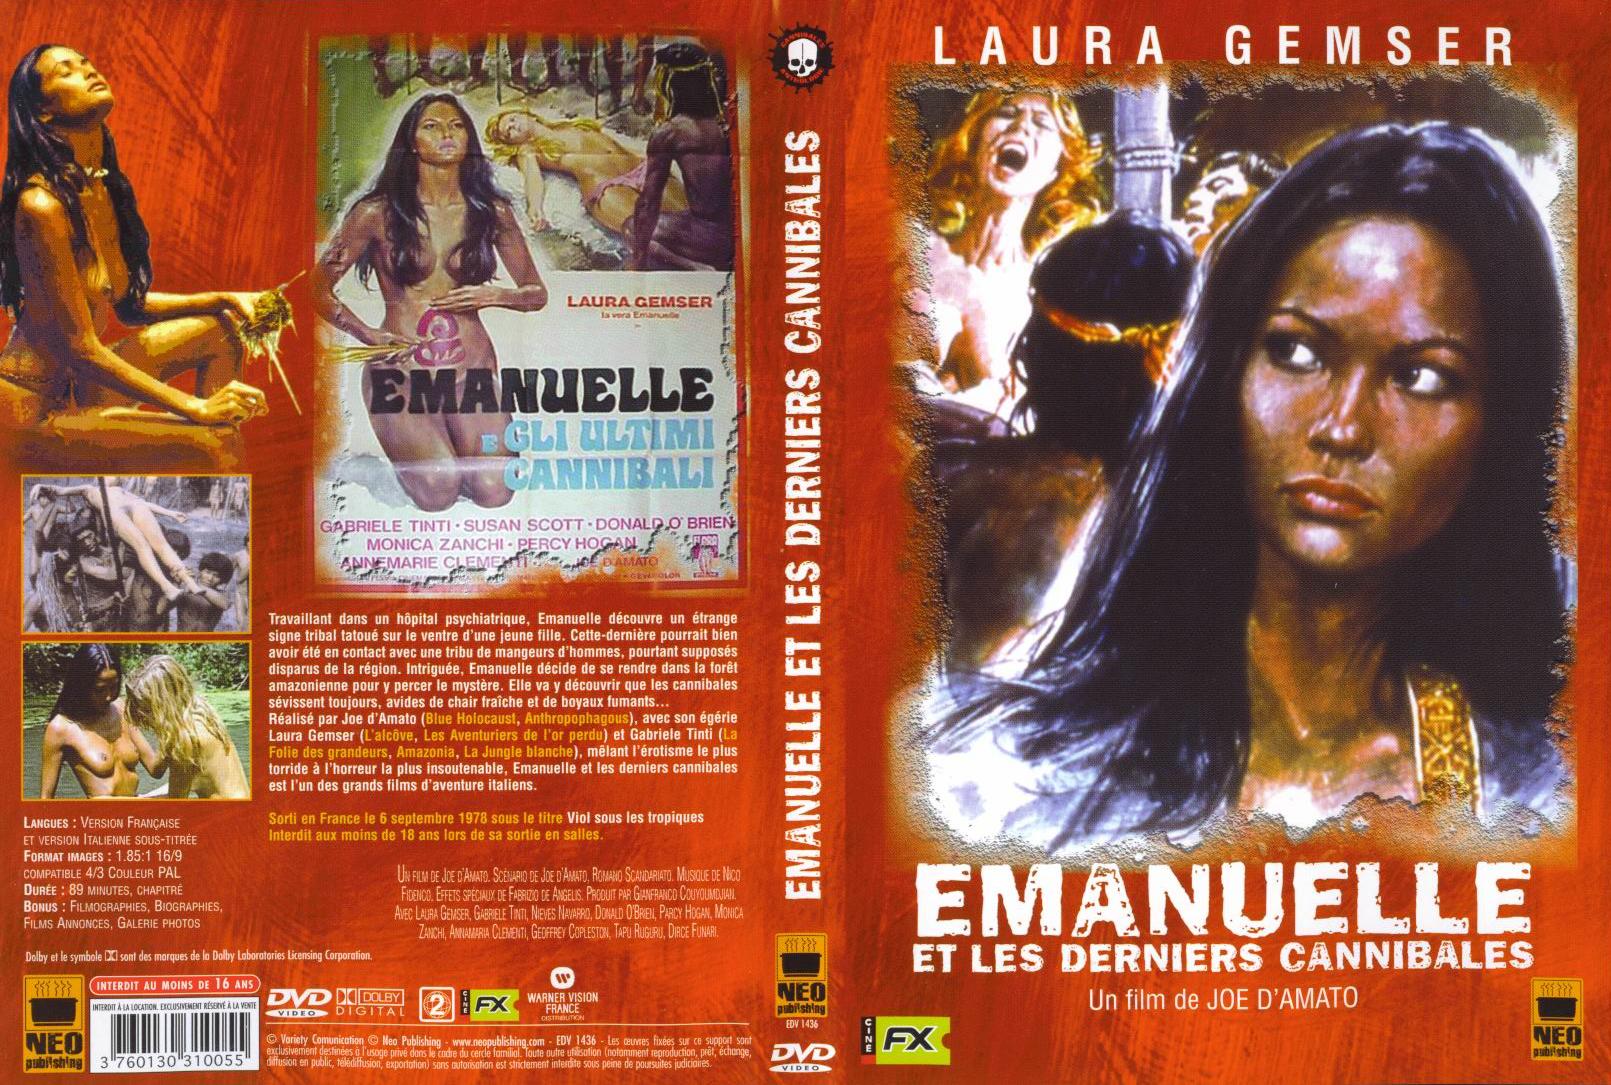 Jaquette DVD Emanuelle et les derniers cannibales v2